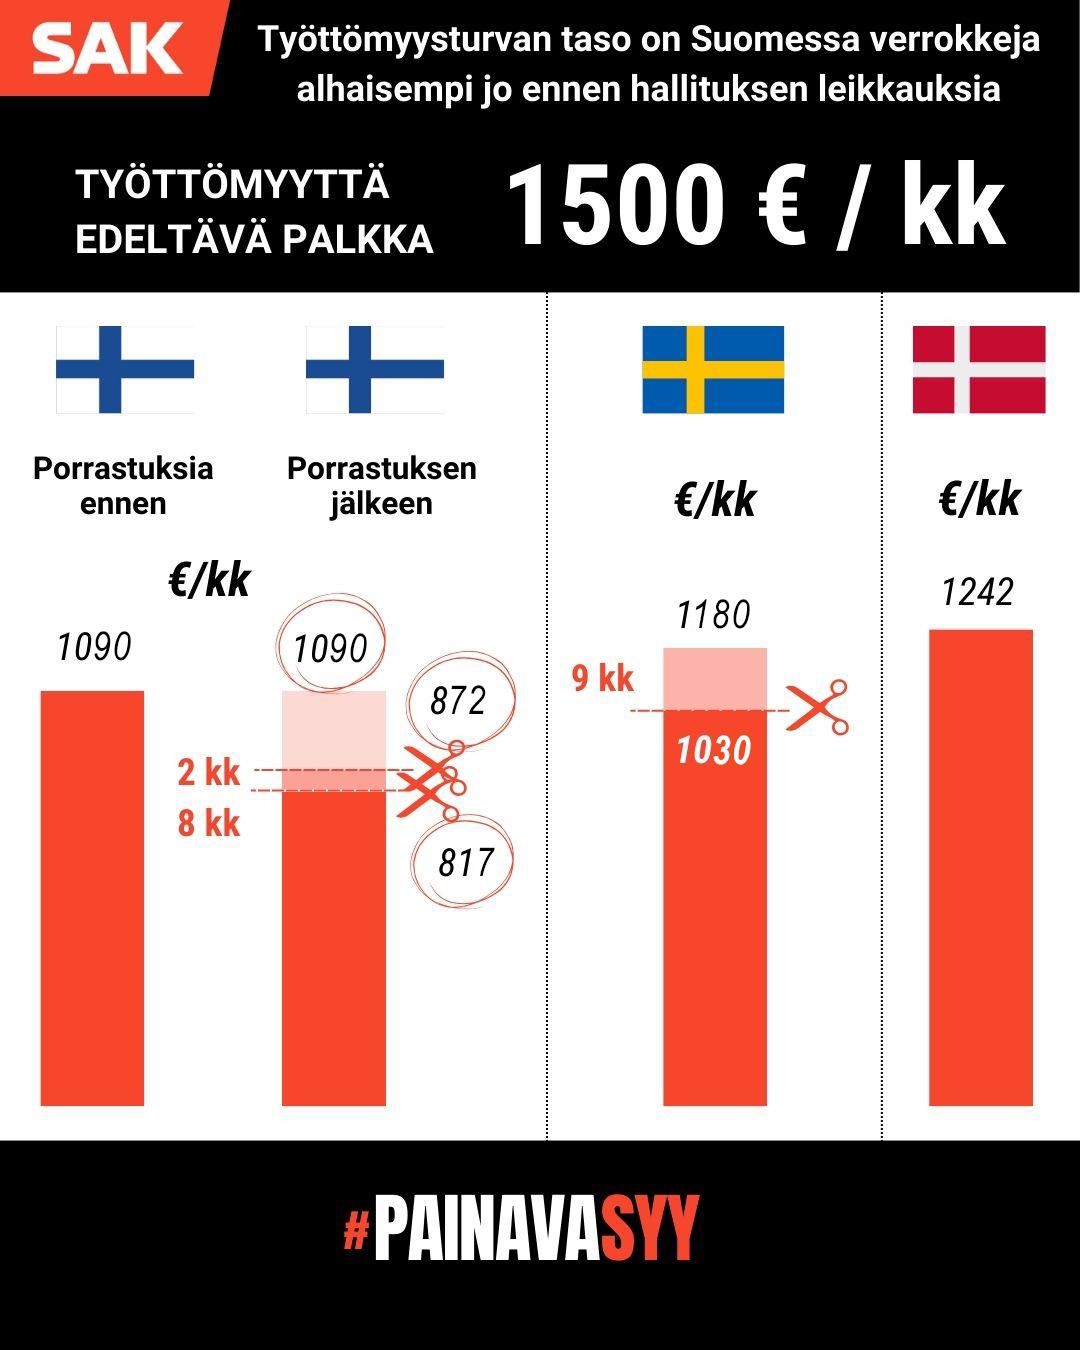 Kuvan kaaviosta ilmenee, että työttömyysturvan taso on Suomessa pienempi kuin Ruotsissa tai Tanskassa jo ennen Orpon-Purran hallituksen suunnittelemia leikkauksia, kun työntekijän työttömyyttä edeltävä palkka on ollut 1500 euroa kuukaudessa.